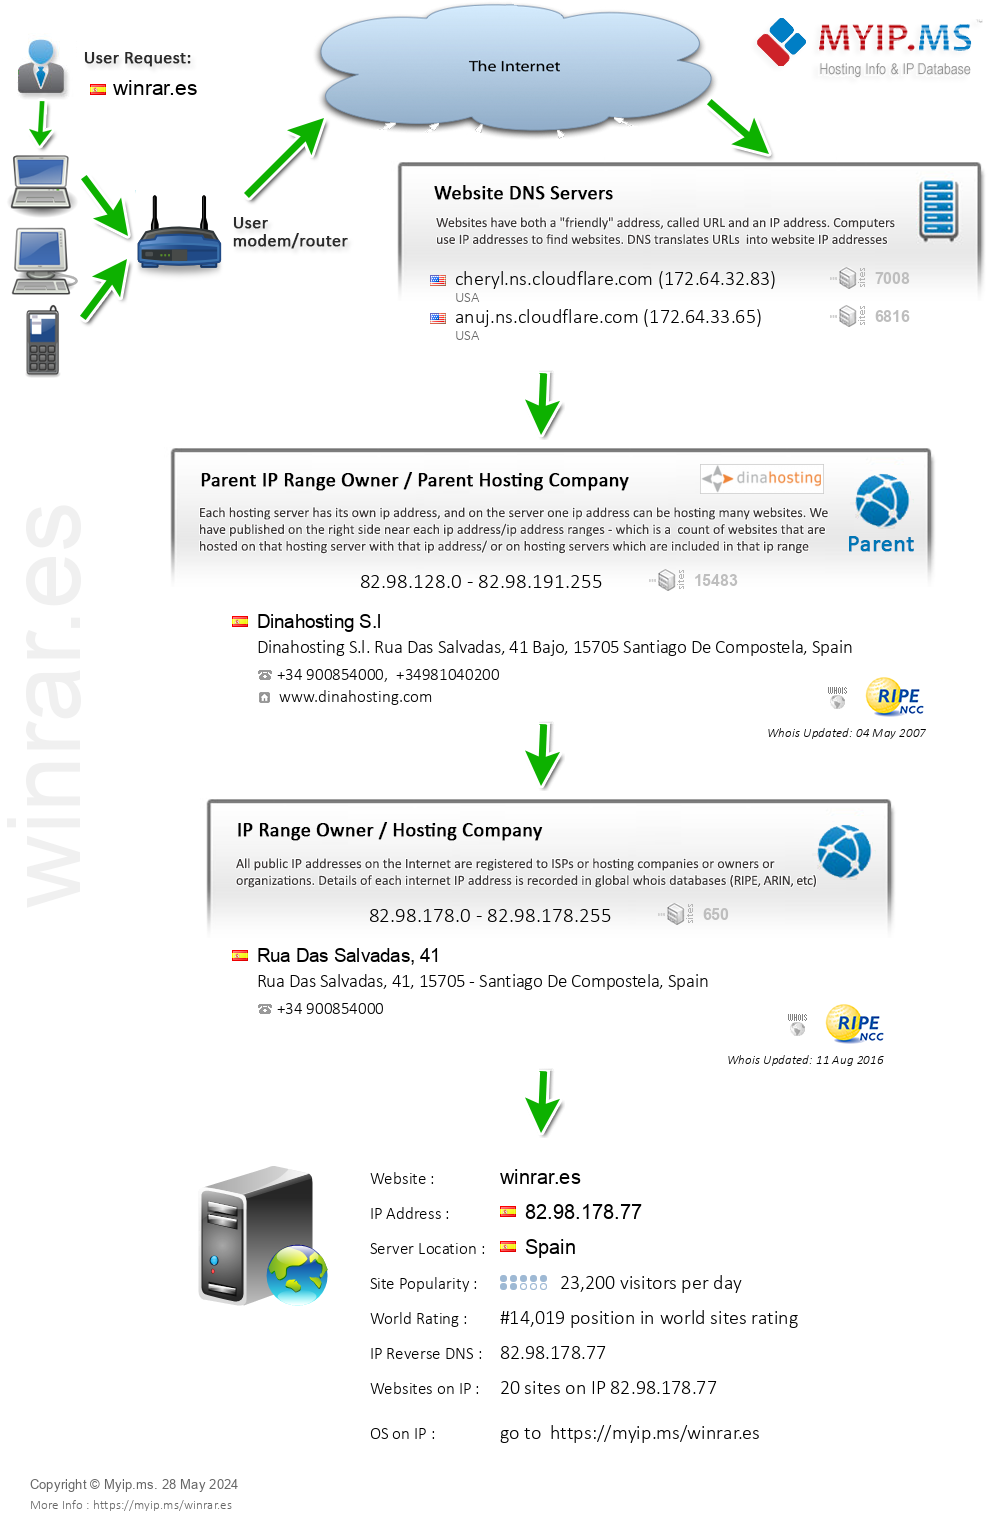 Winrar.es - Website Hosting Visual IP Diagram